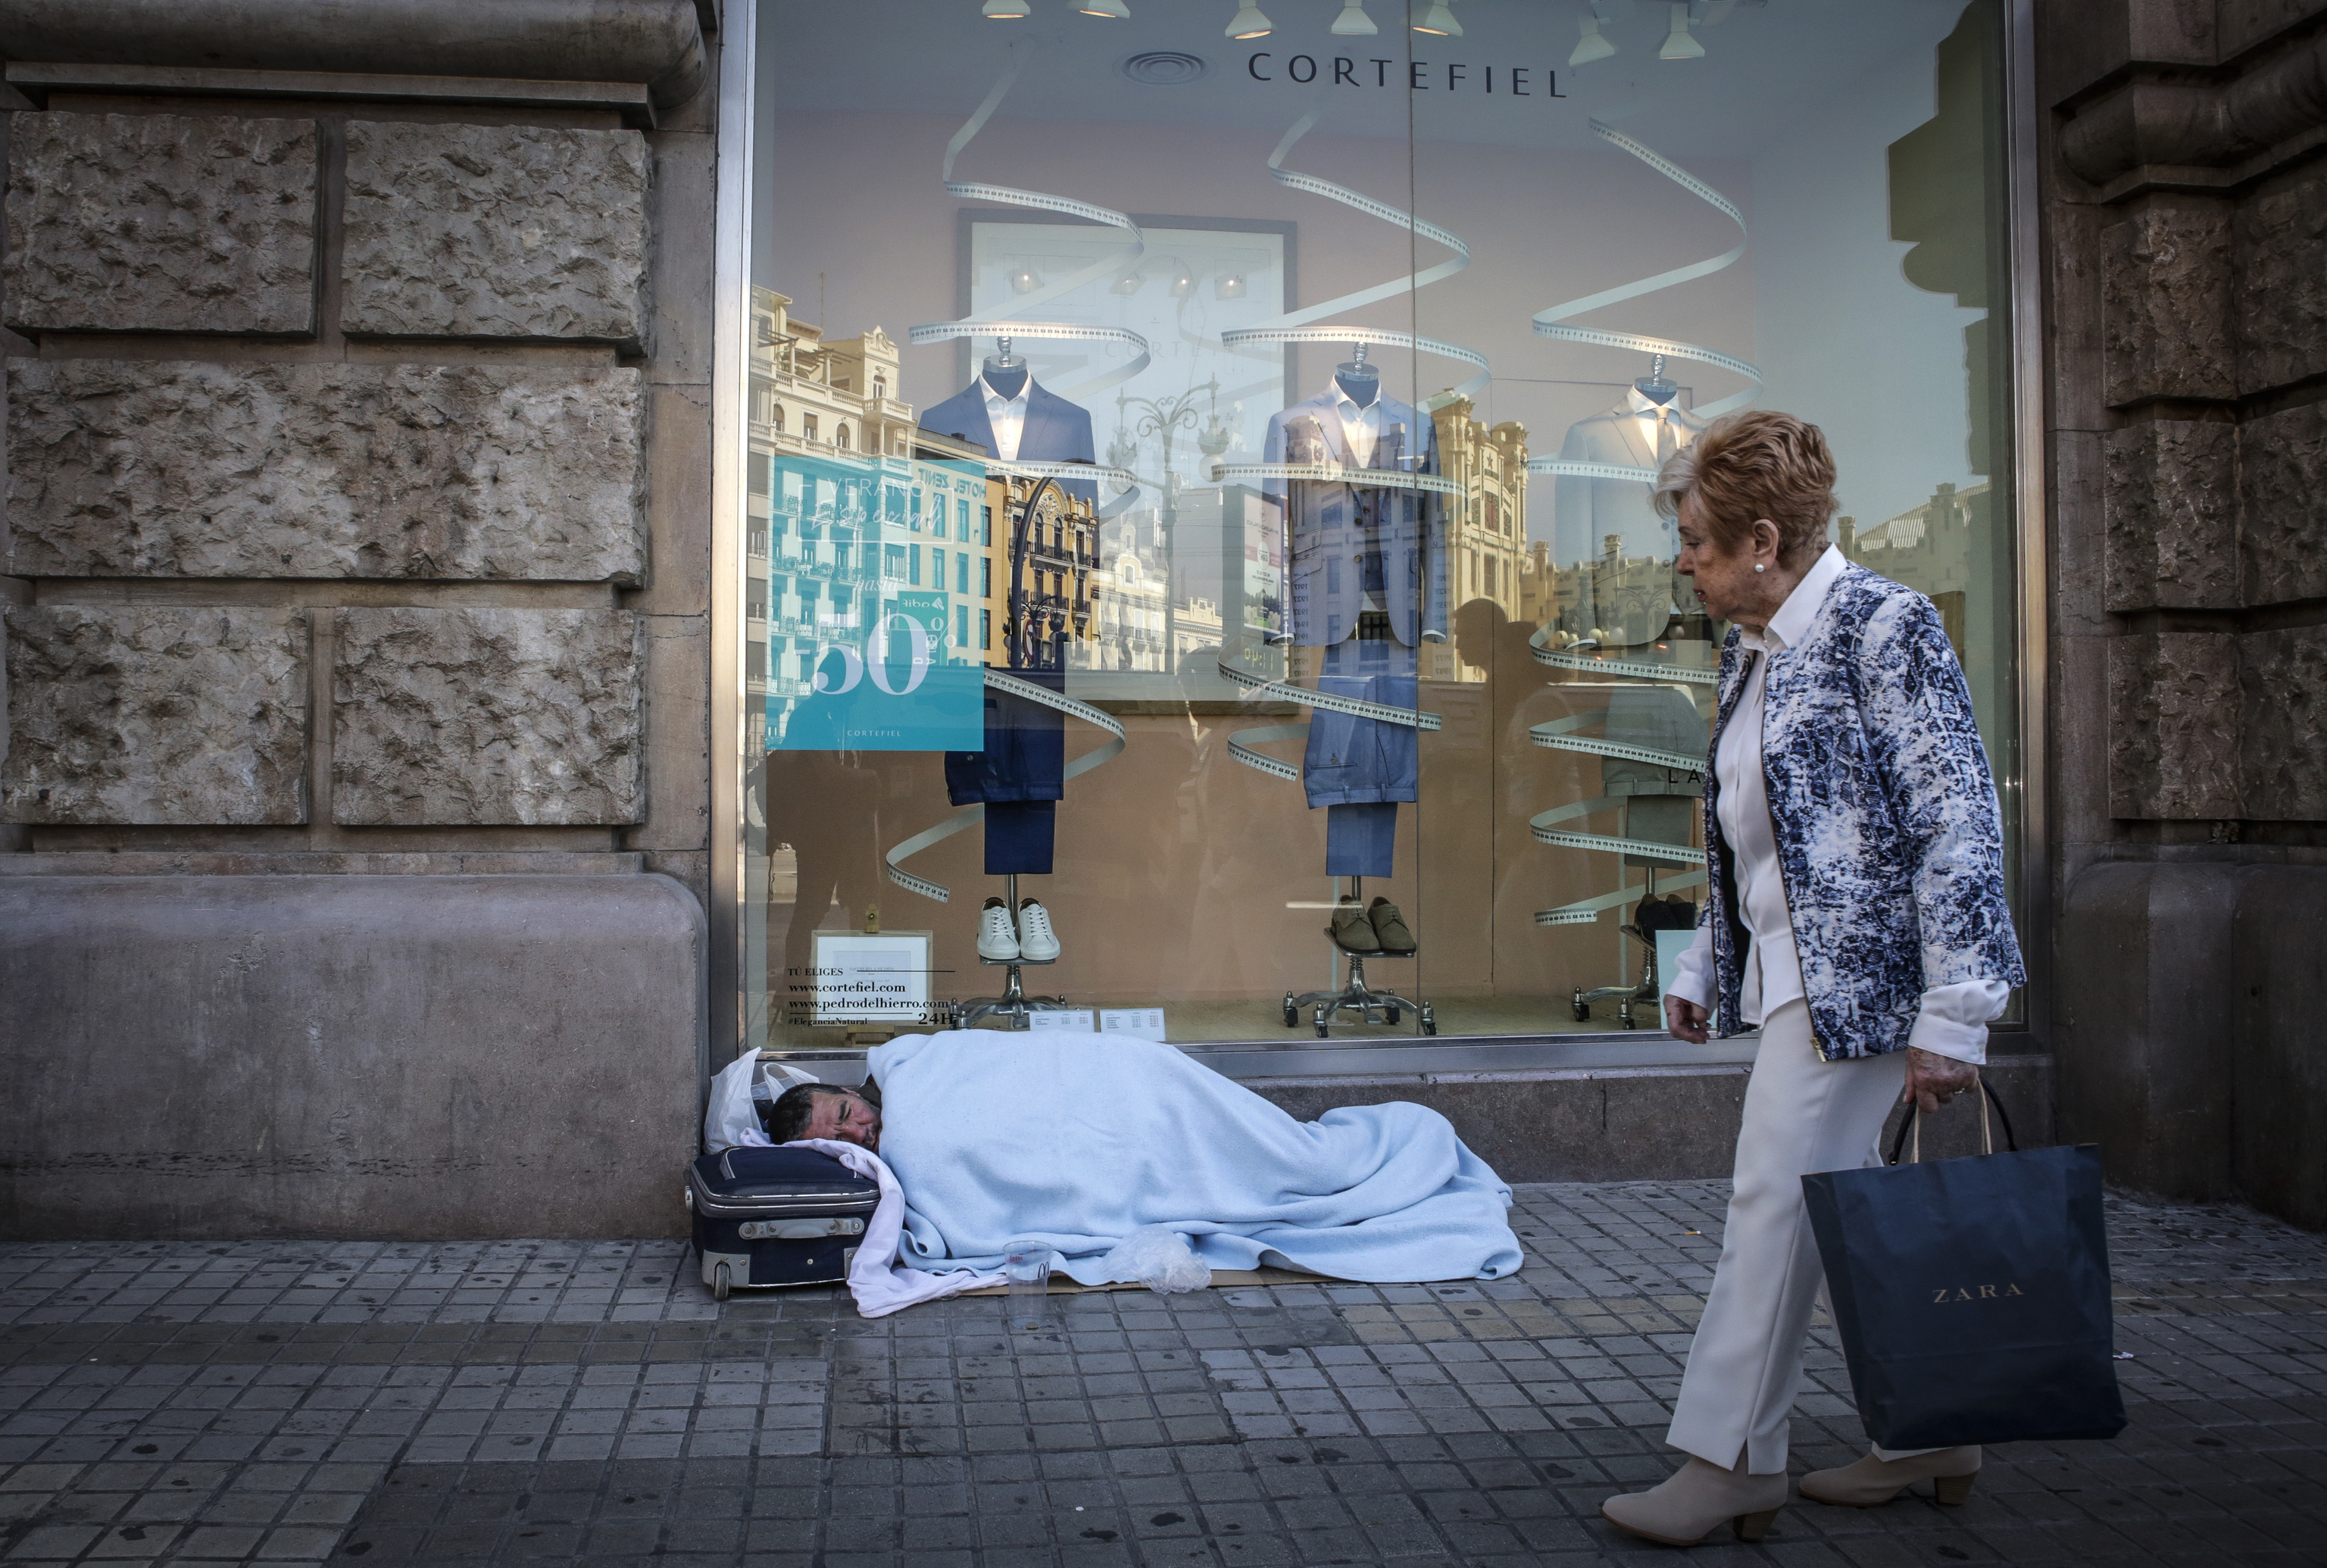 Una persona sin hogar duerme junto a un escaparate de una tienda, situada en una calle centrica de Valencia.